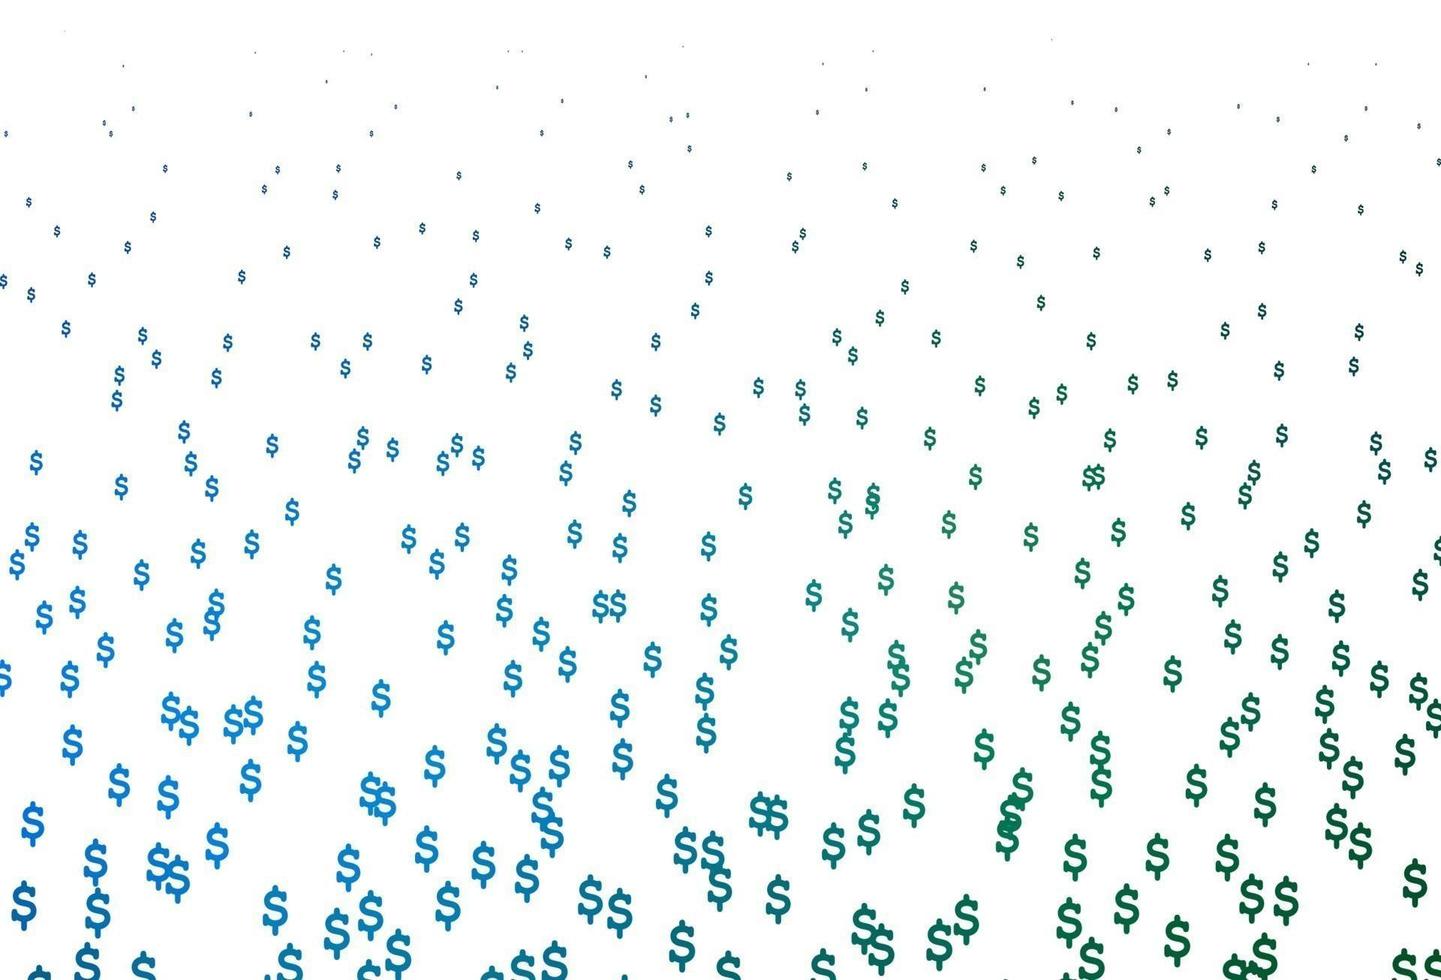 textura vector azul, verde escuro com símbolos financeiros.